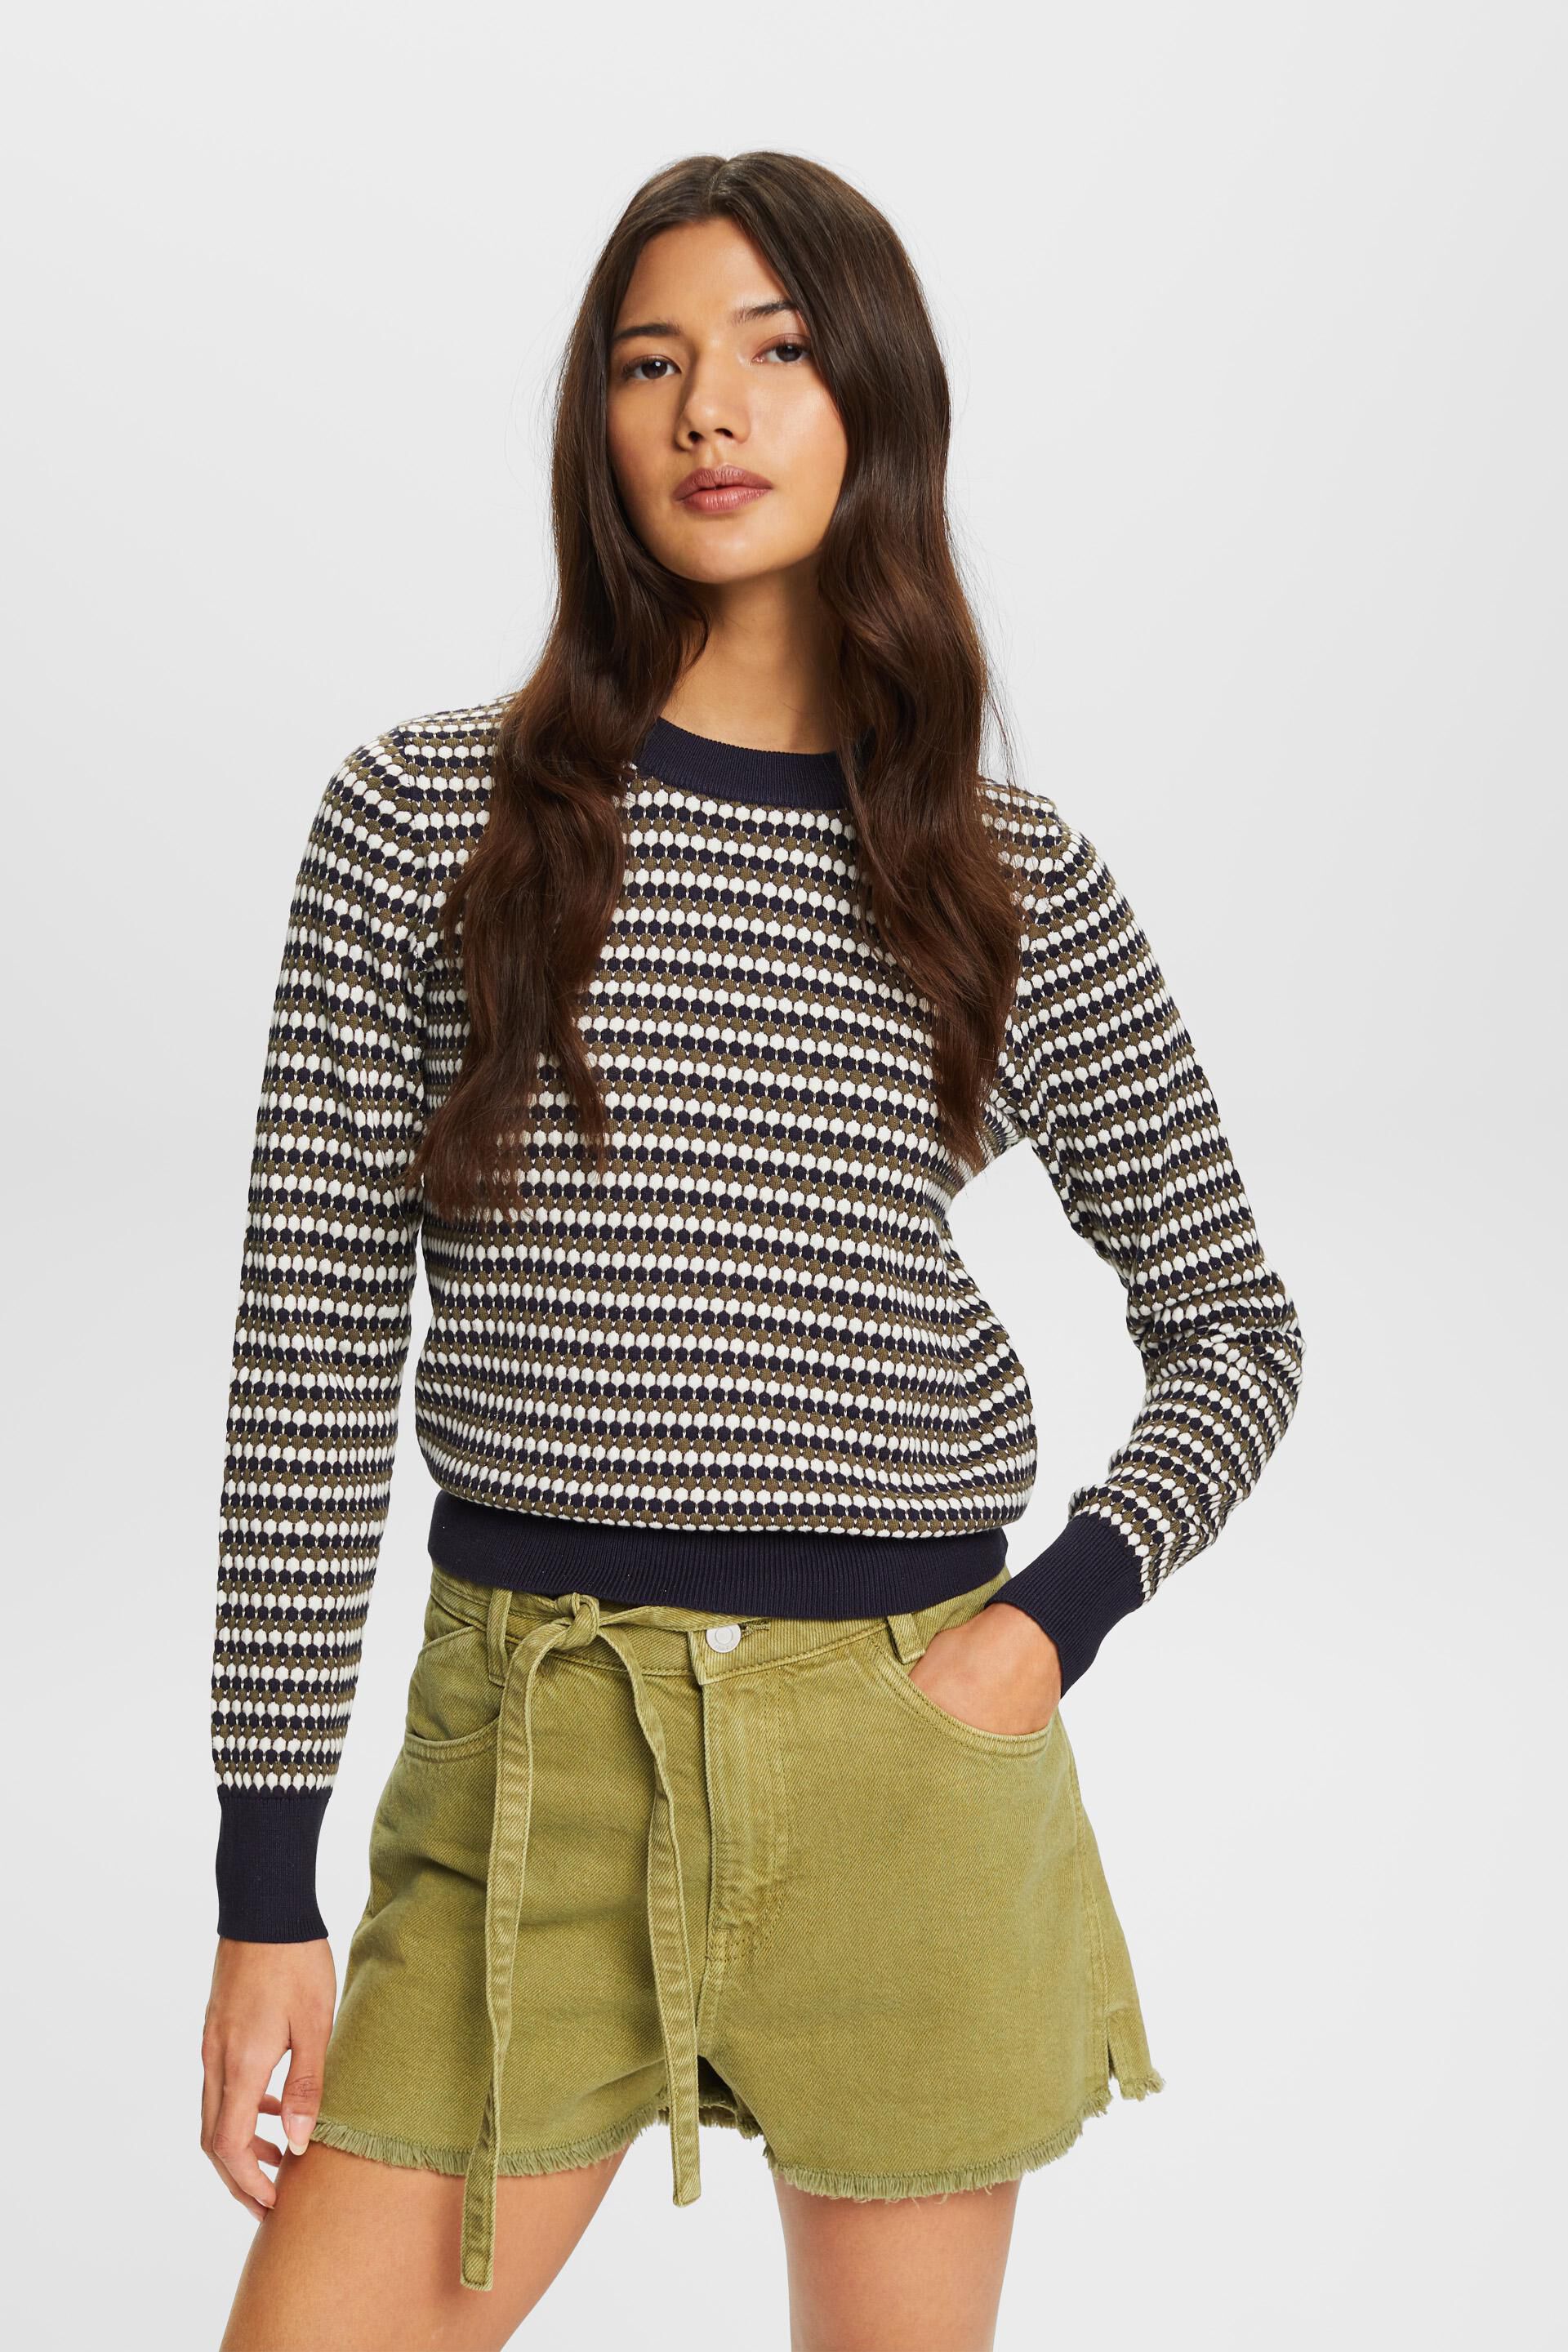 Esprit Multi-coloured jumper, cotton blend